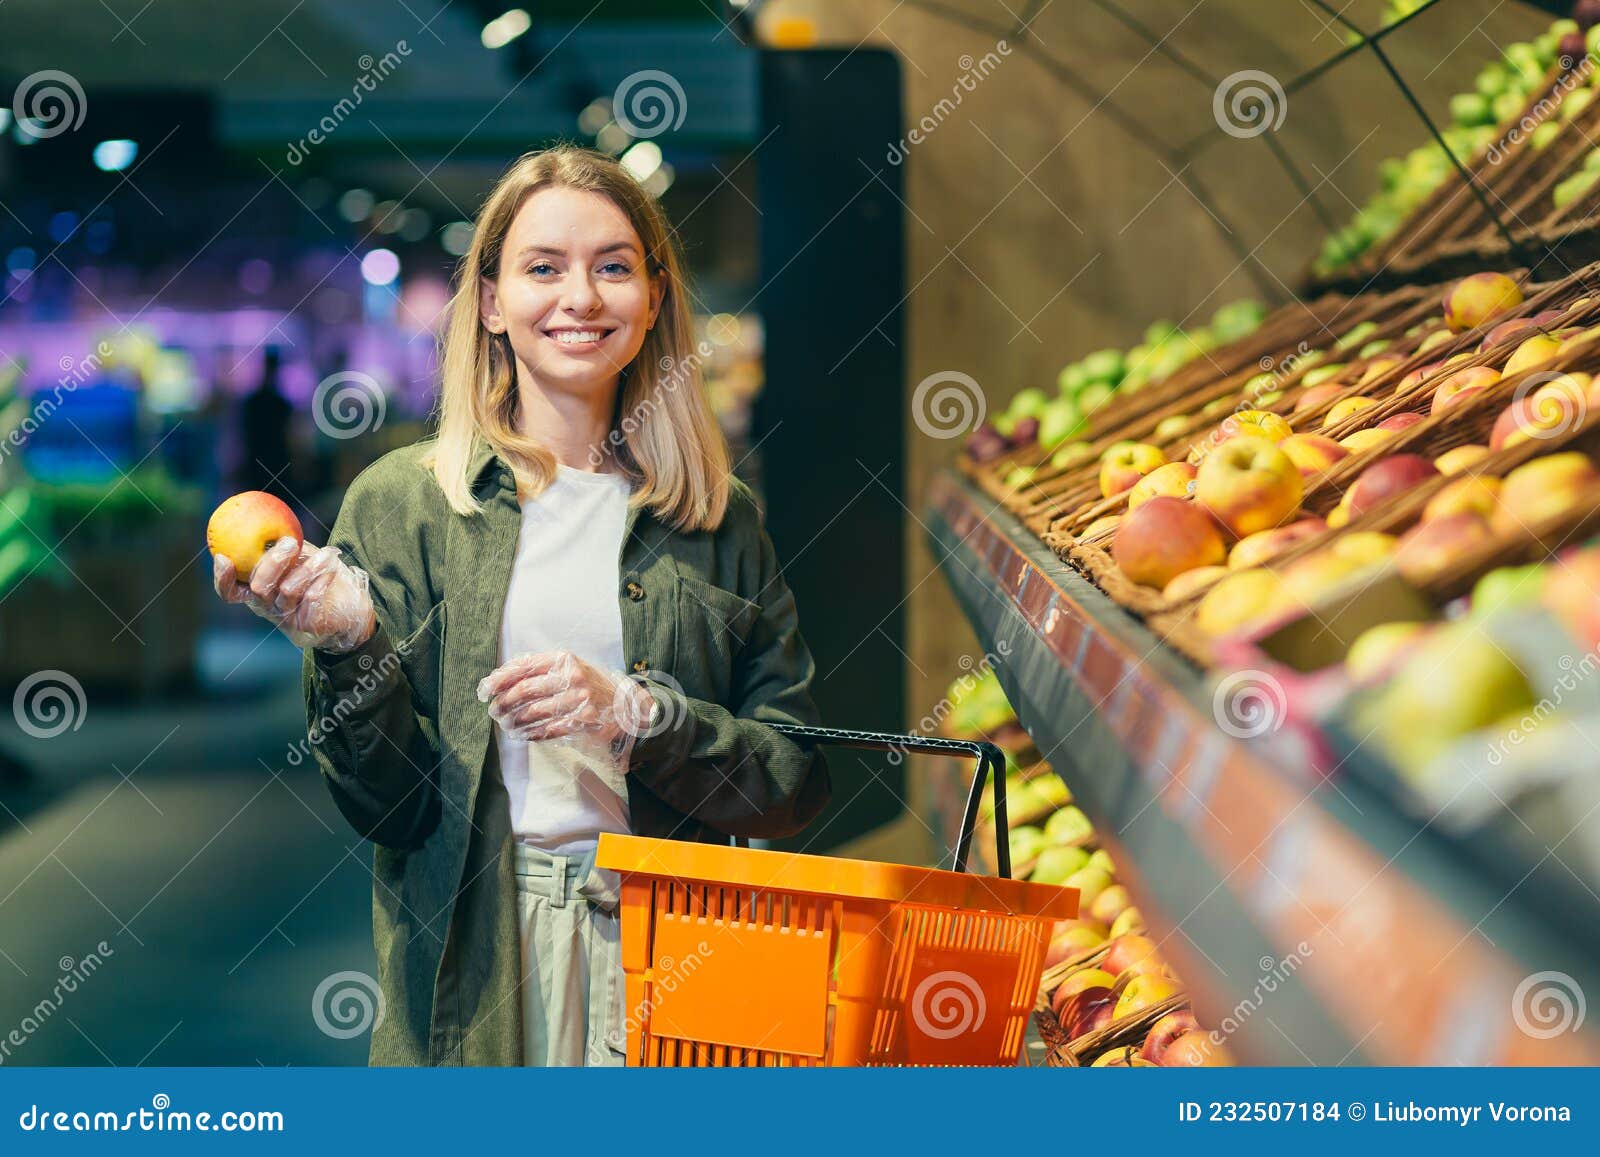 Una Joven Rubia Elige Frutas Verduras En El Mostrador Del Supermercado imagen